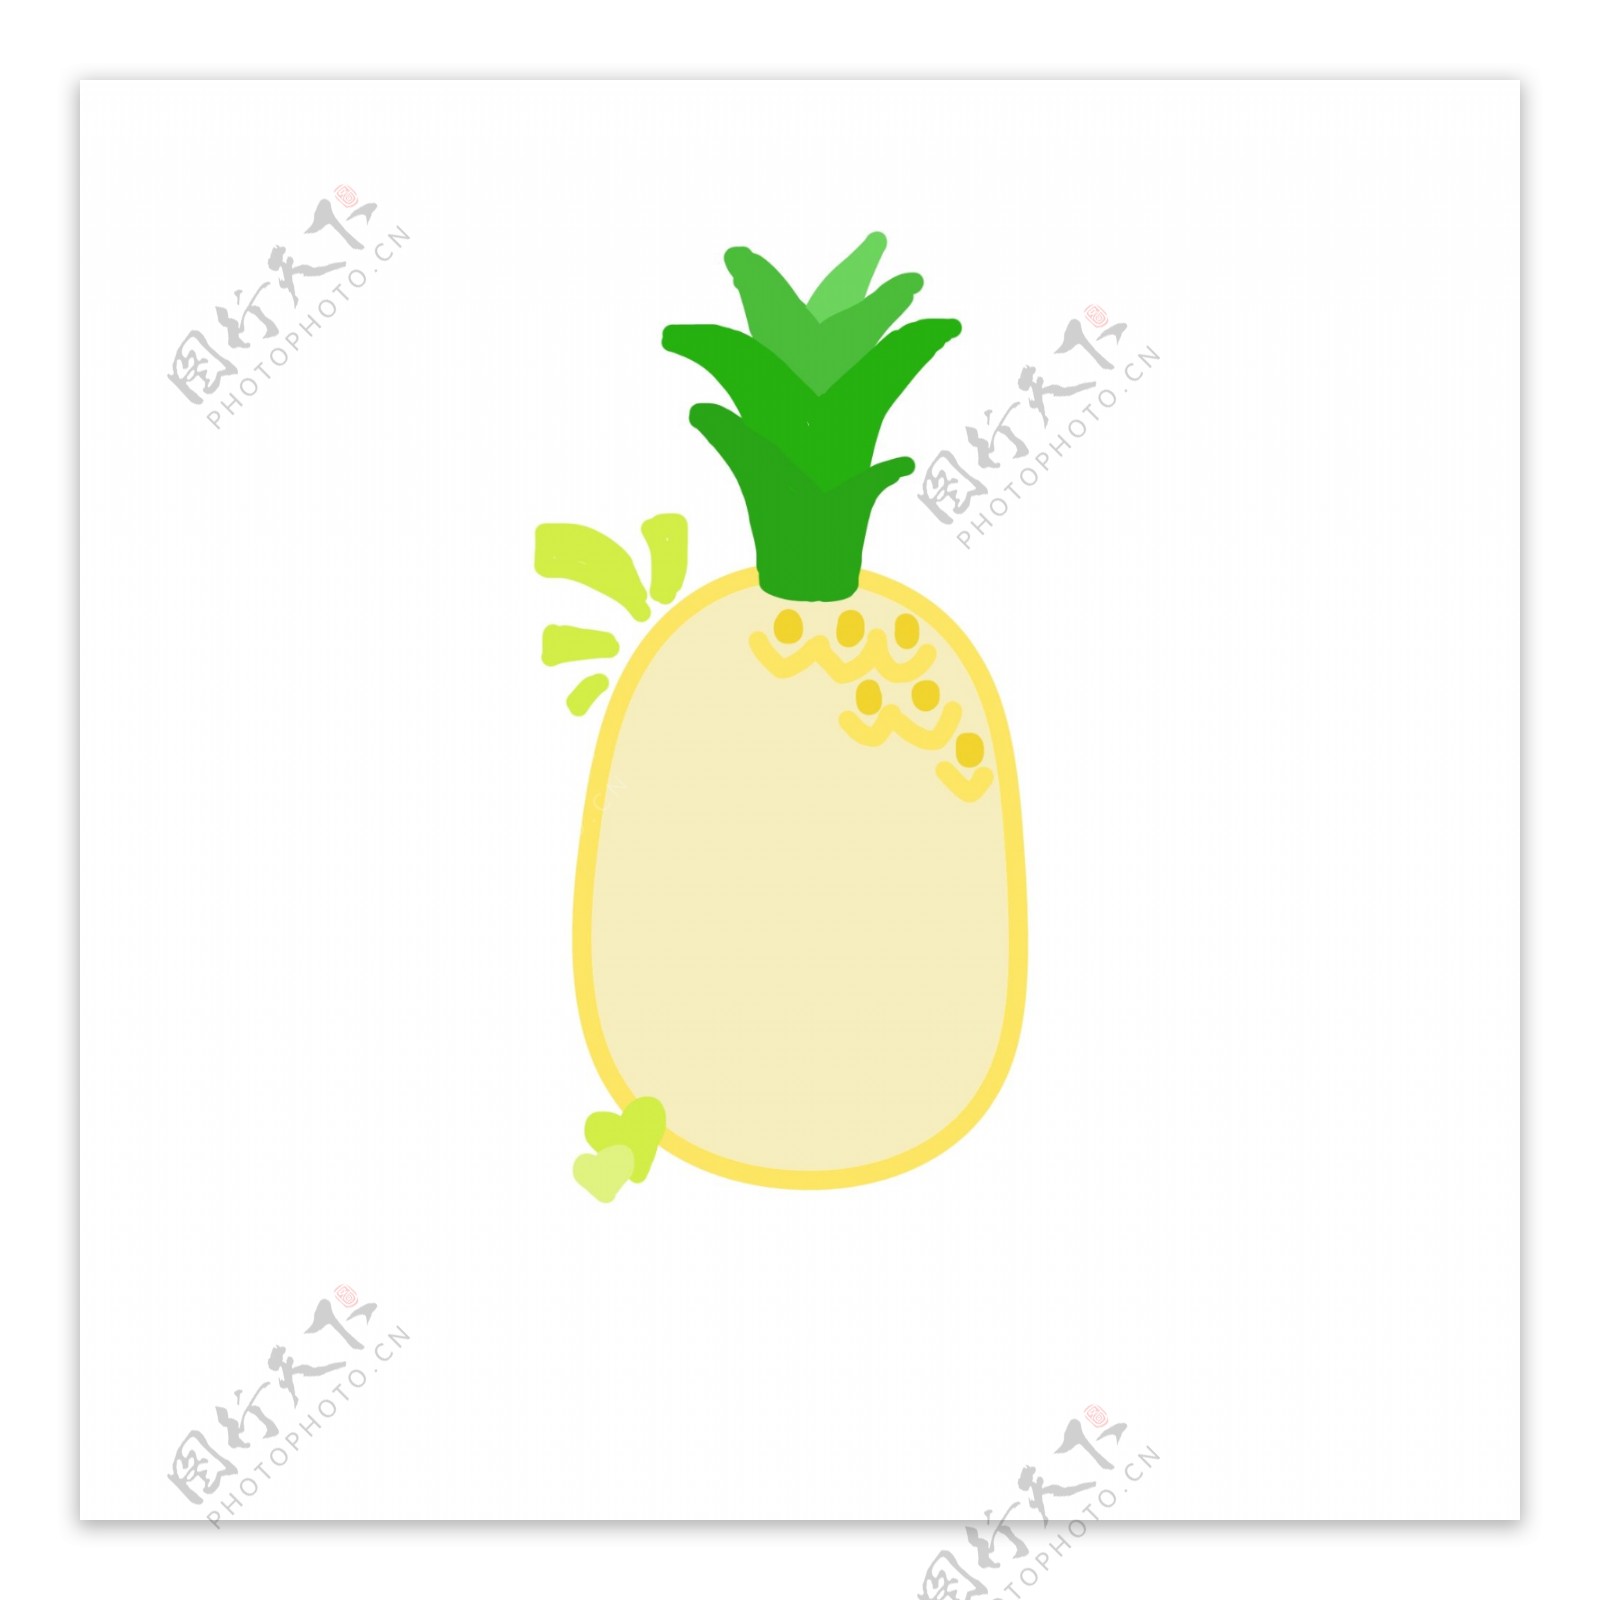 手绘卡通菠萝水果对话框边框可商用元素